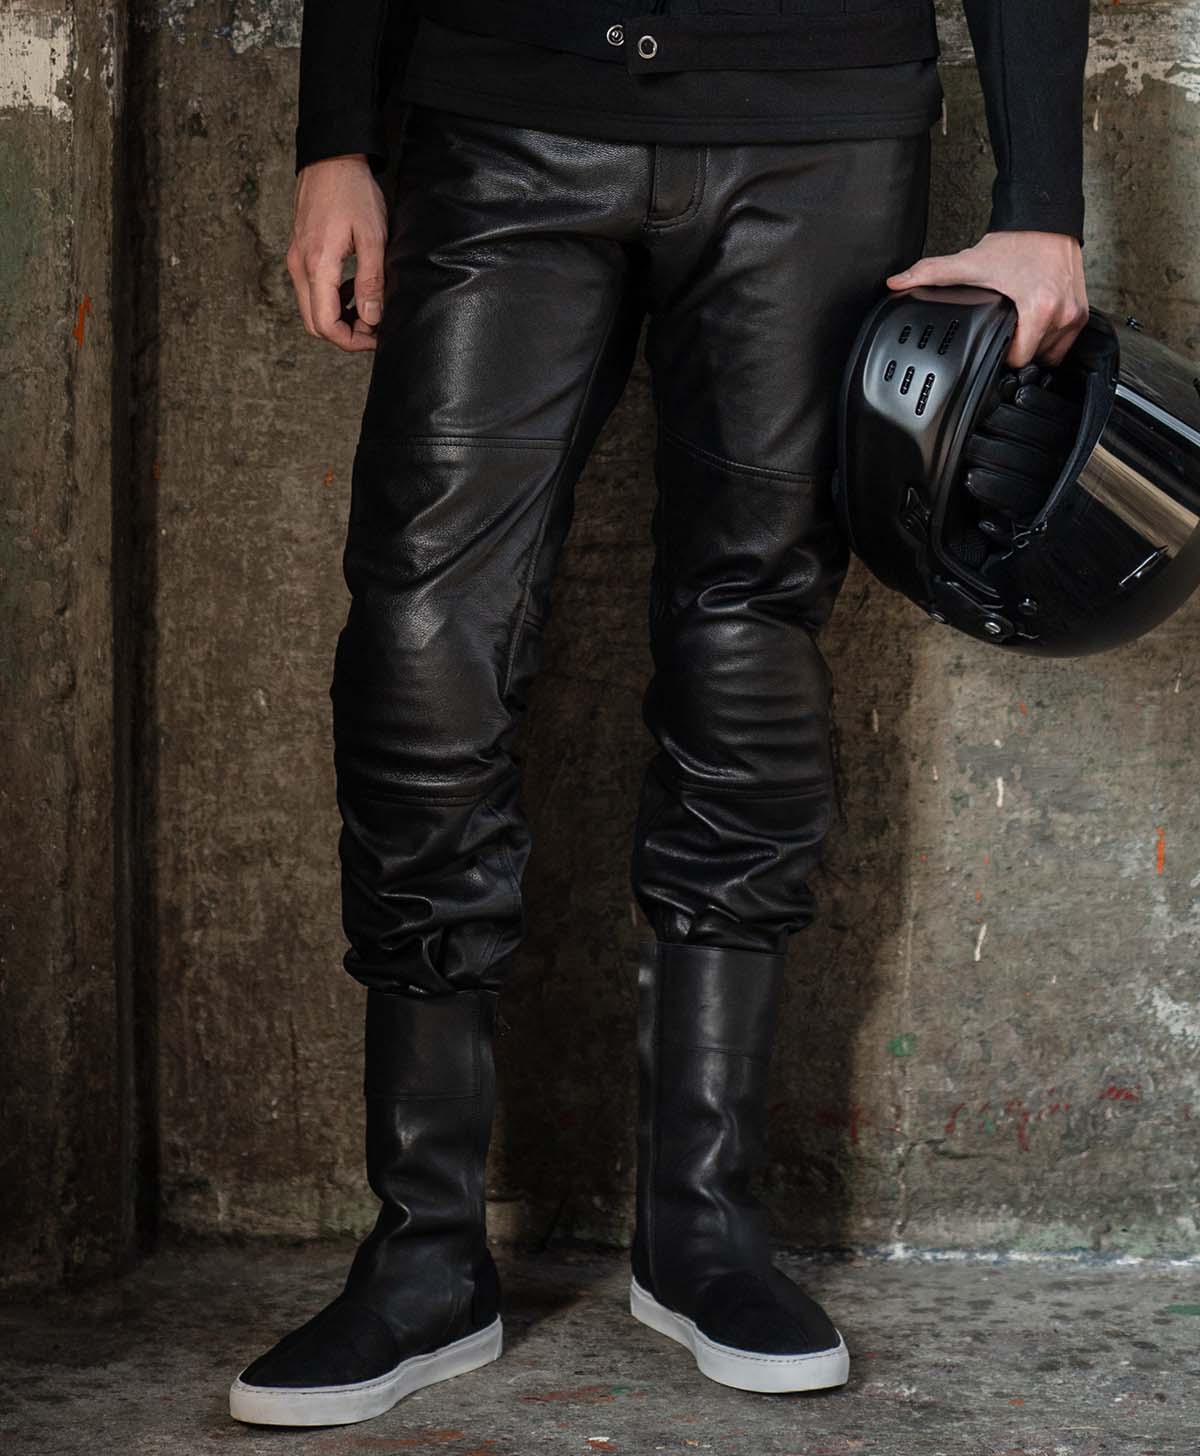 00s Kadoya 'Armoured' Black Leather Motorcycle Pants